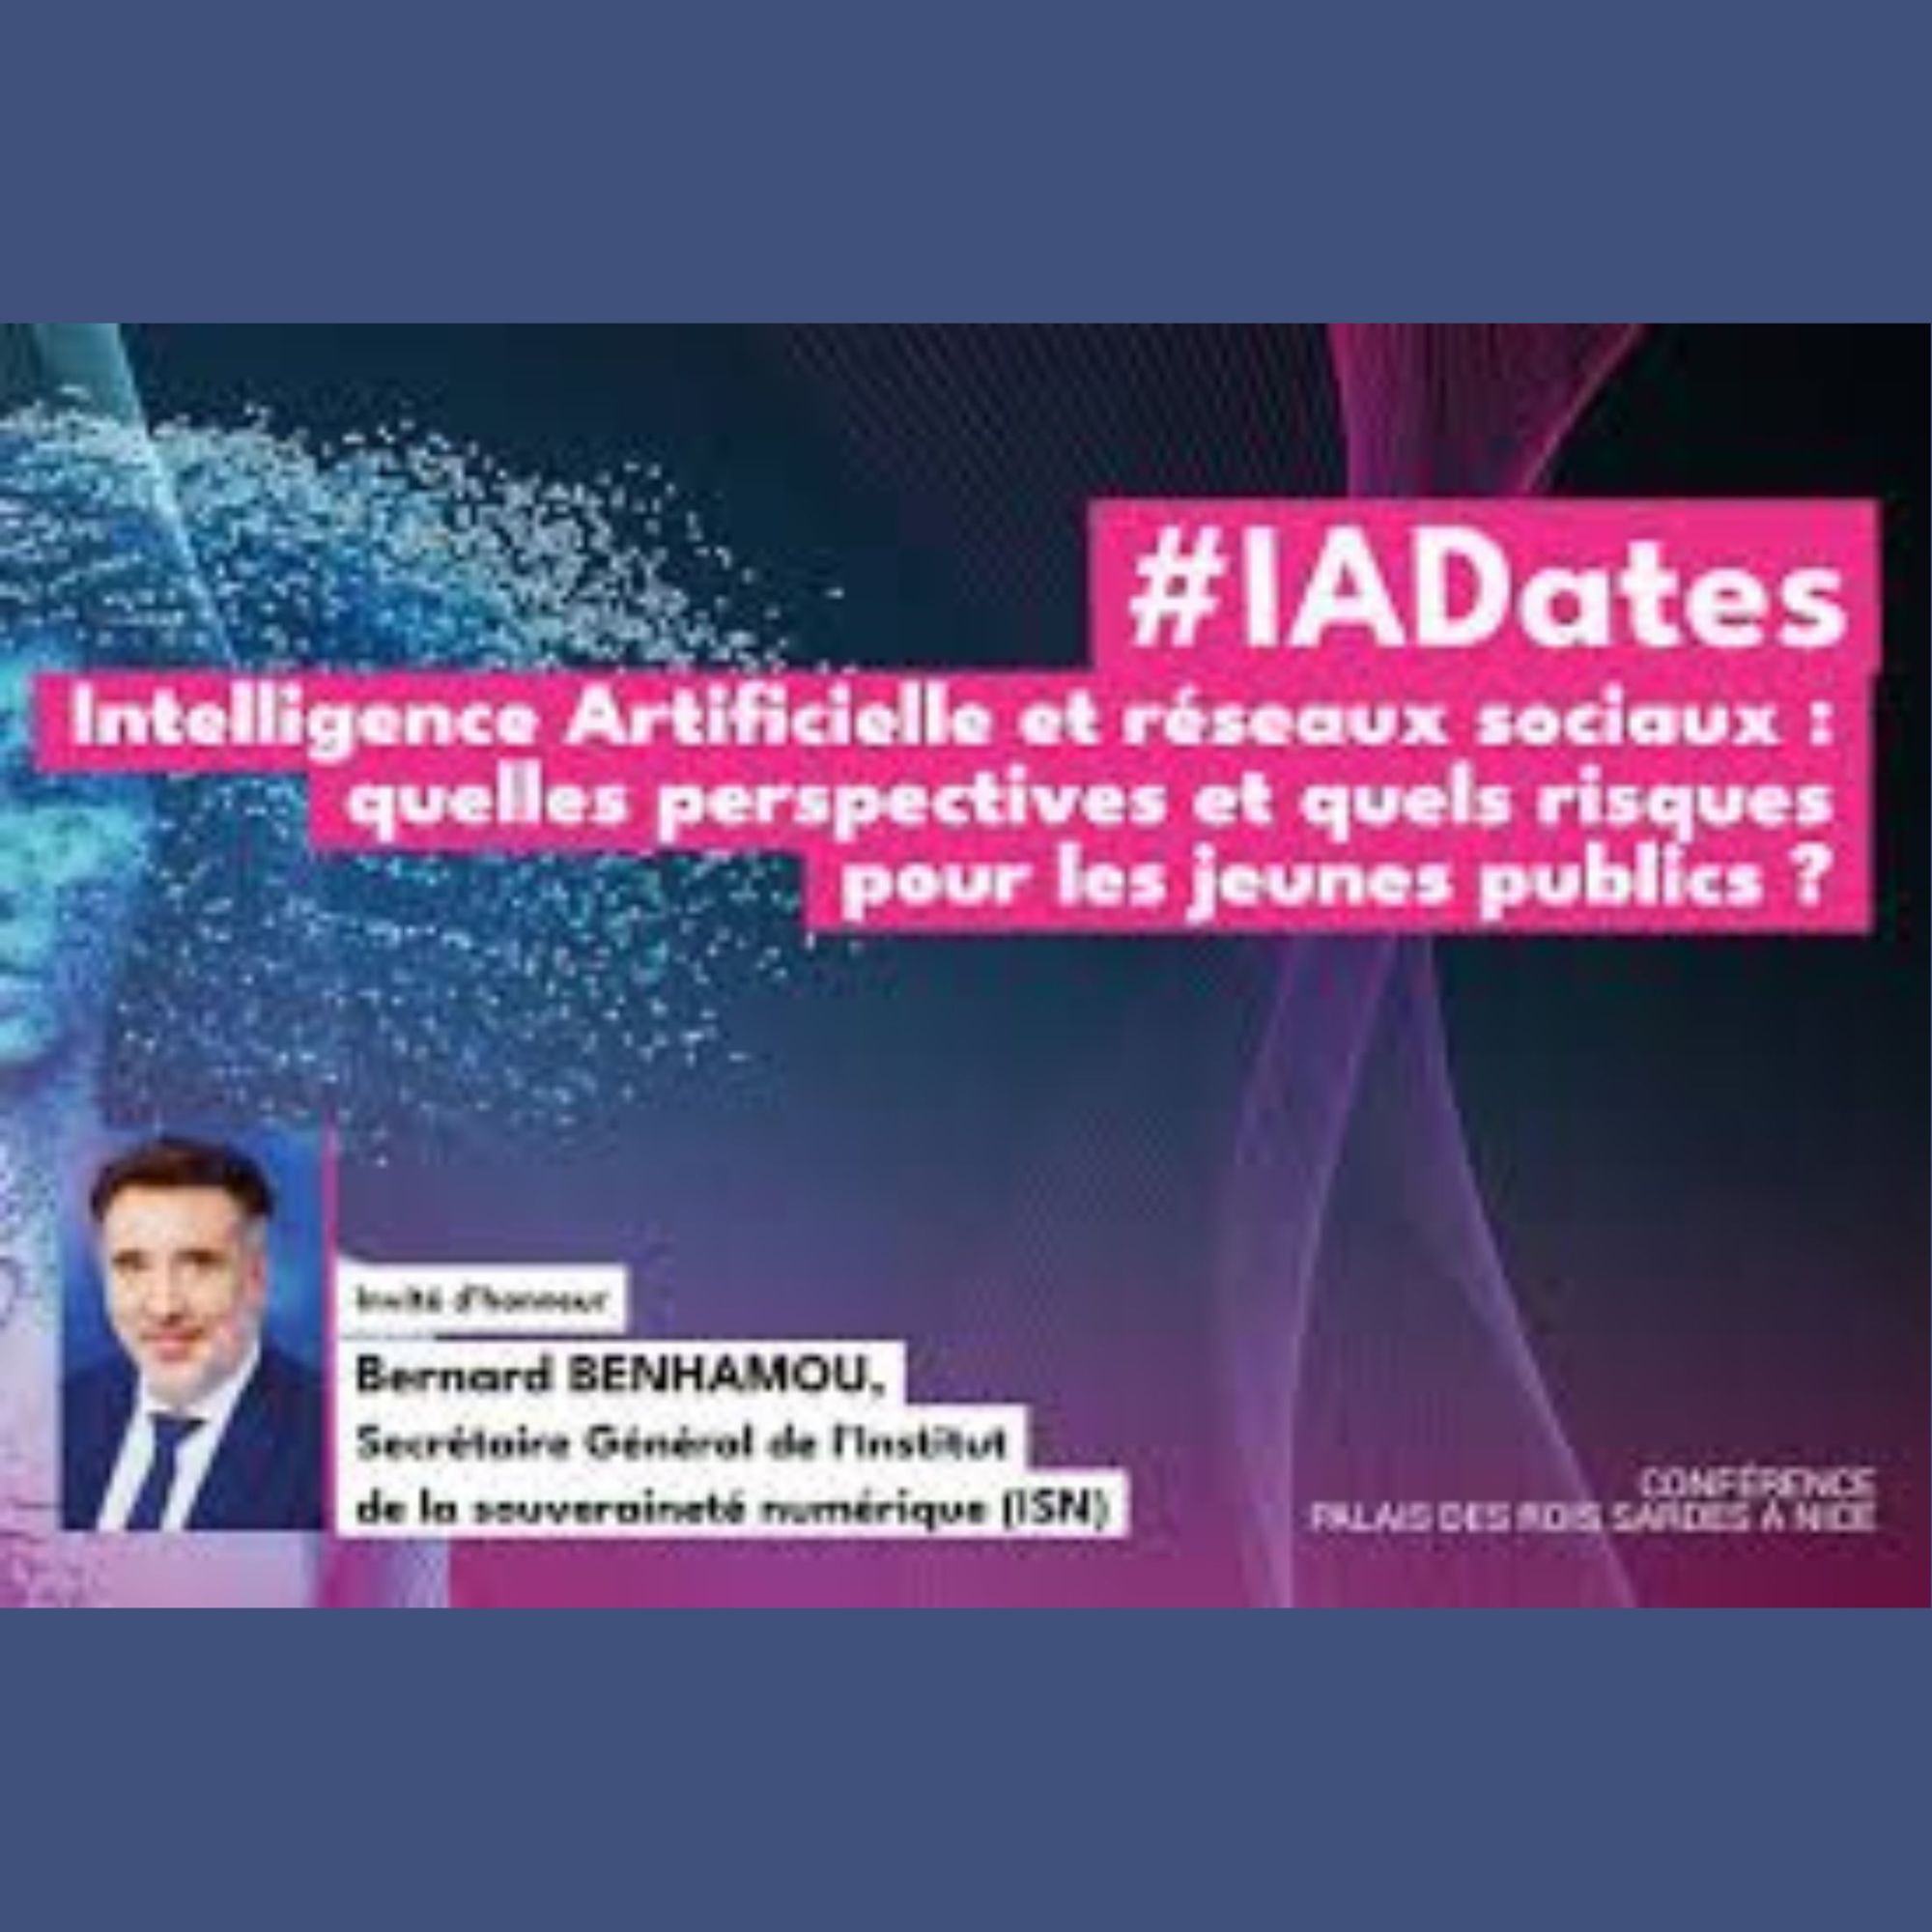 IA DATE - "Intelligence artificielle et réseaux sociaux 